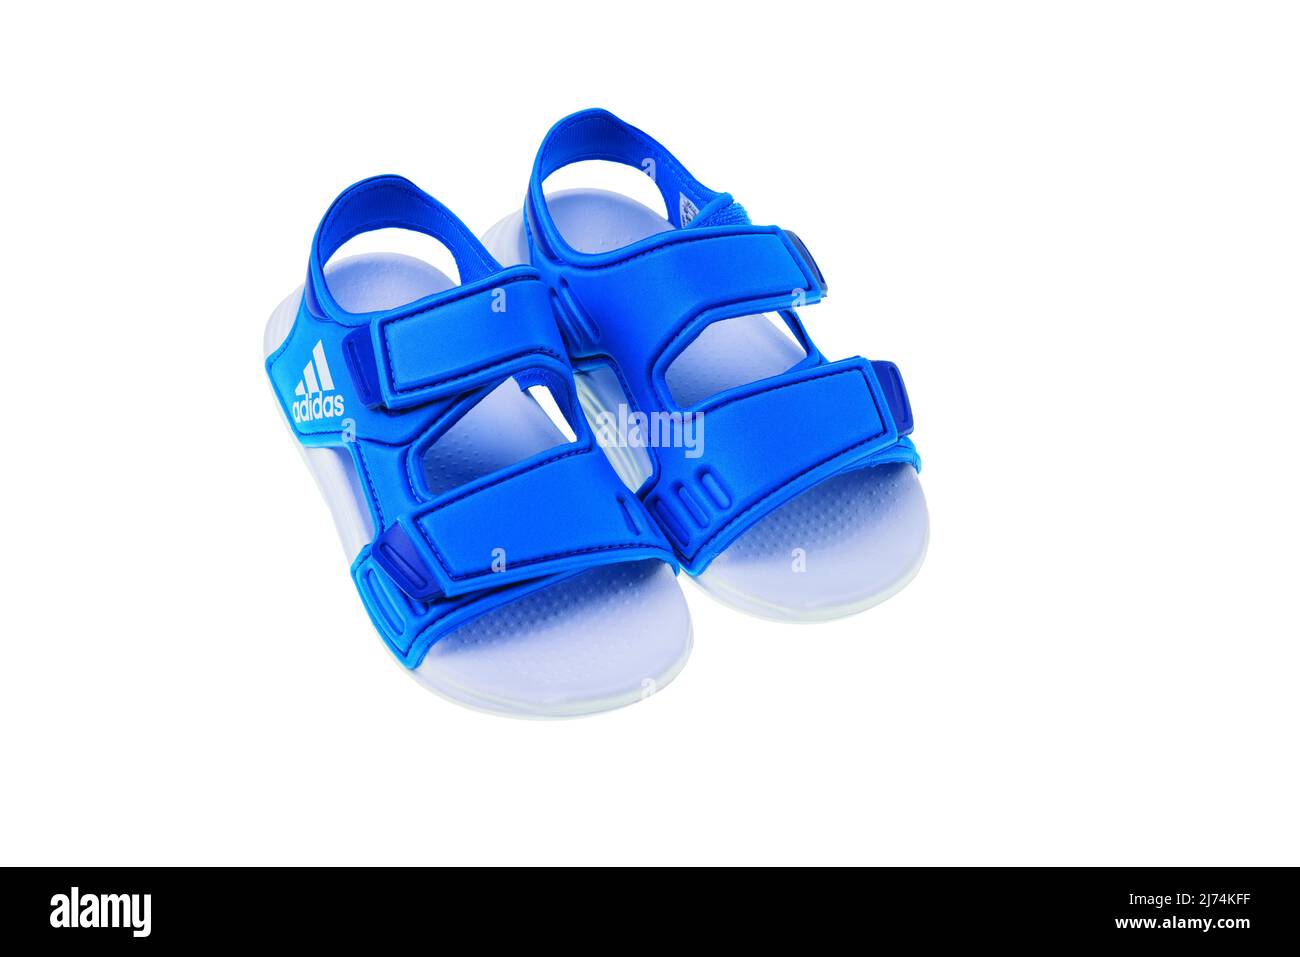 Vista de cerca de los zapatos azules para niños adidas sobre fondo blanco.  SUECIA Fotografía de stock - Alamy